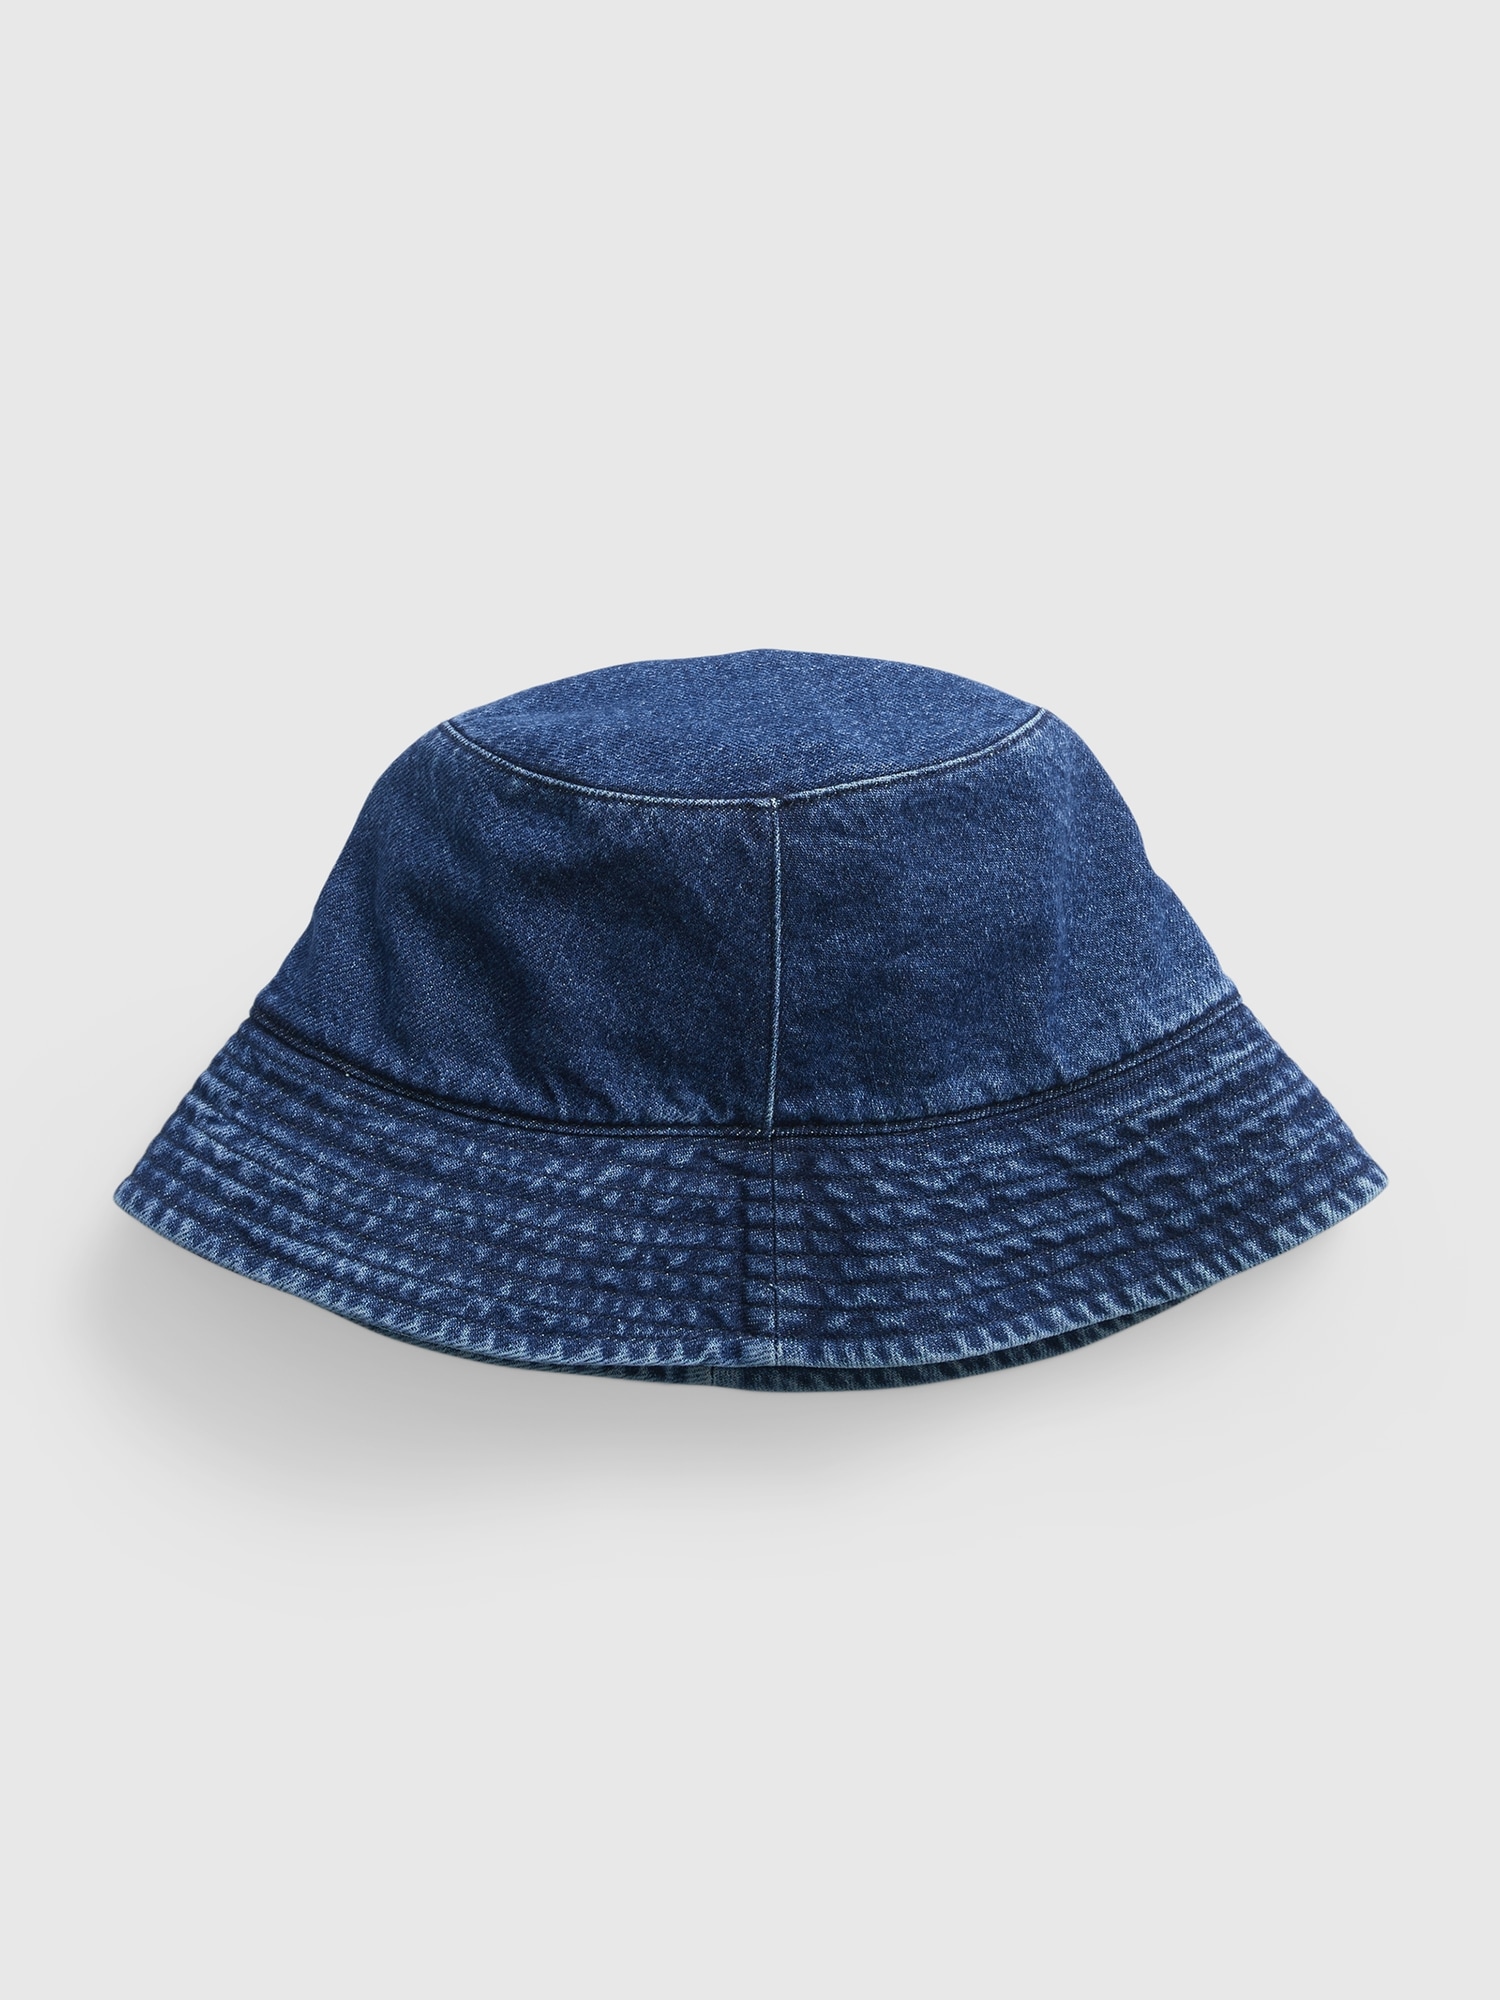 Gap Denim Bucket Hat blue. 1